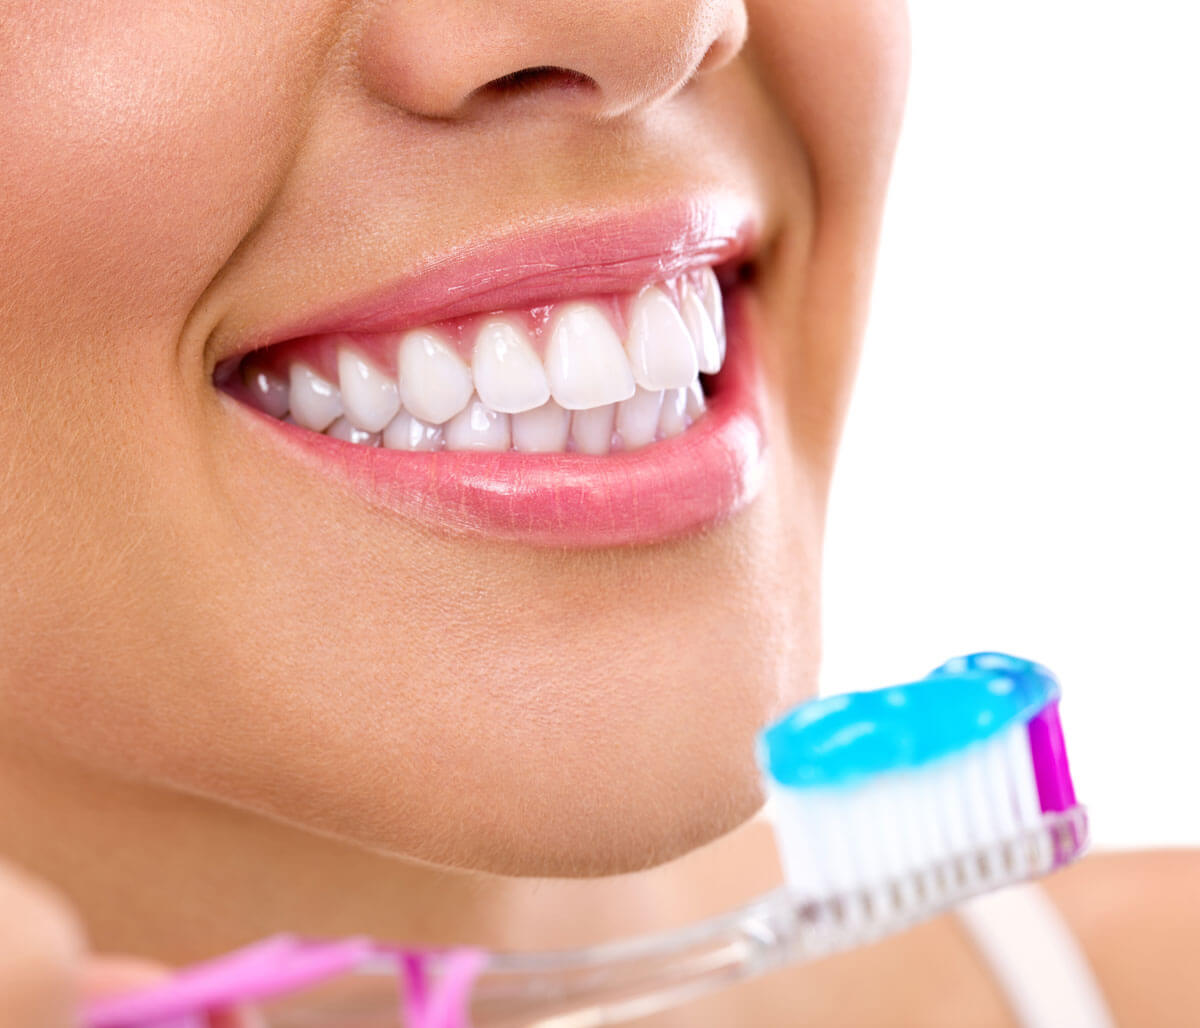 Normal Teeth Cleaning Procedure